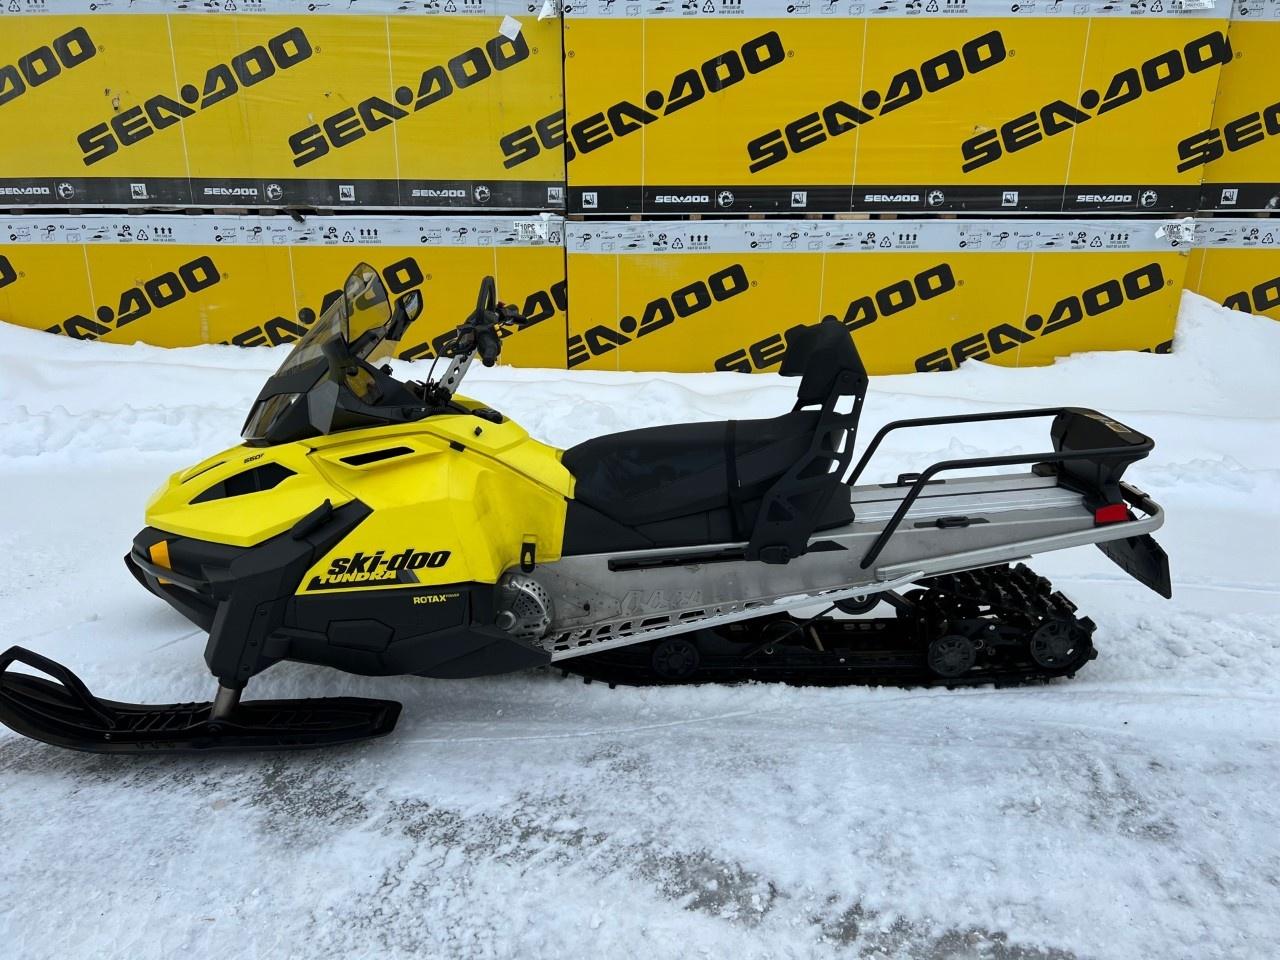 2020 Ski-Doo TUNDRA LT 550 FAN